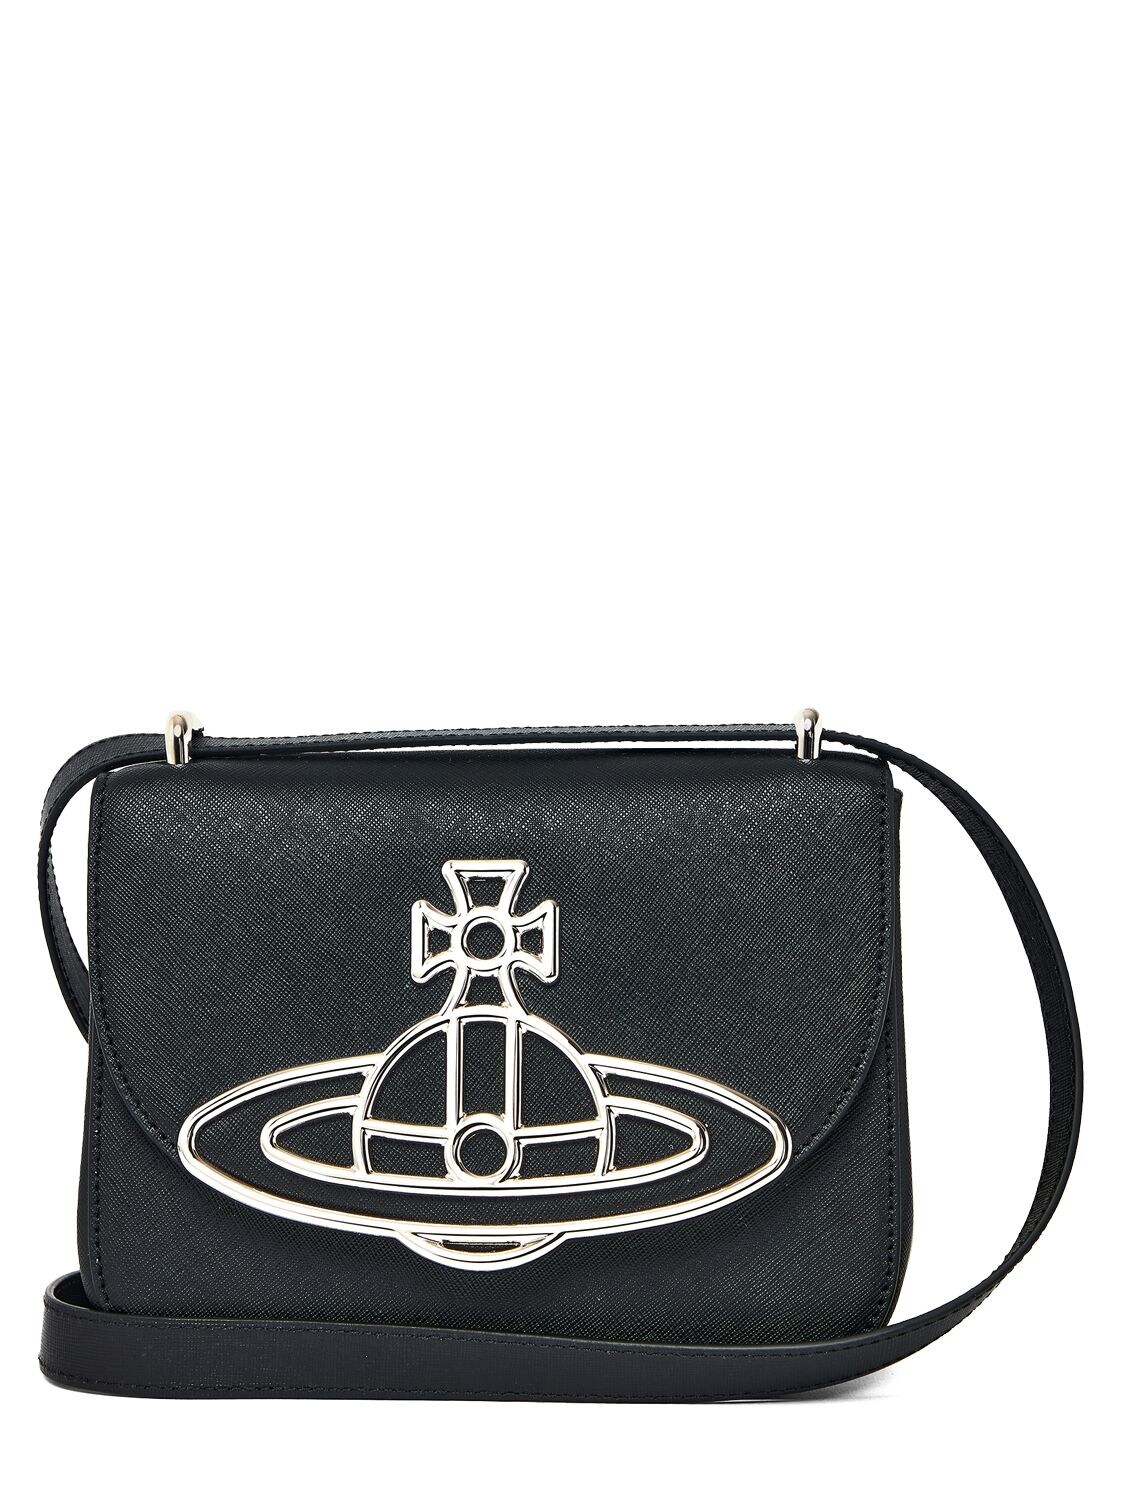 Vivienne Westwood Linda Leather Shoulder Bag In Black | ModeSens